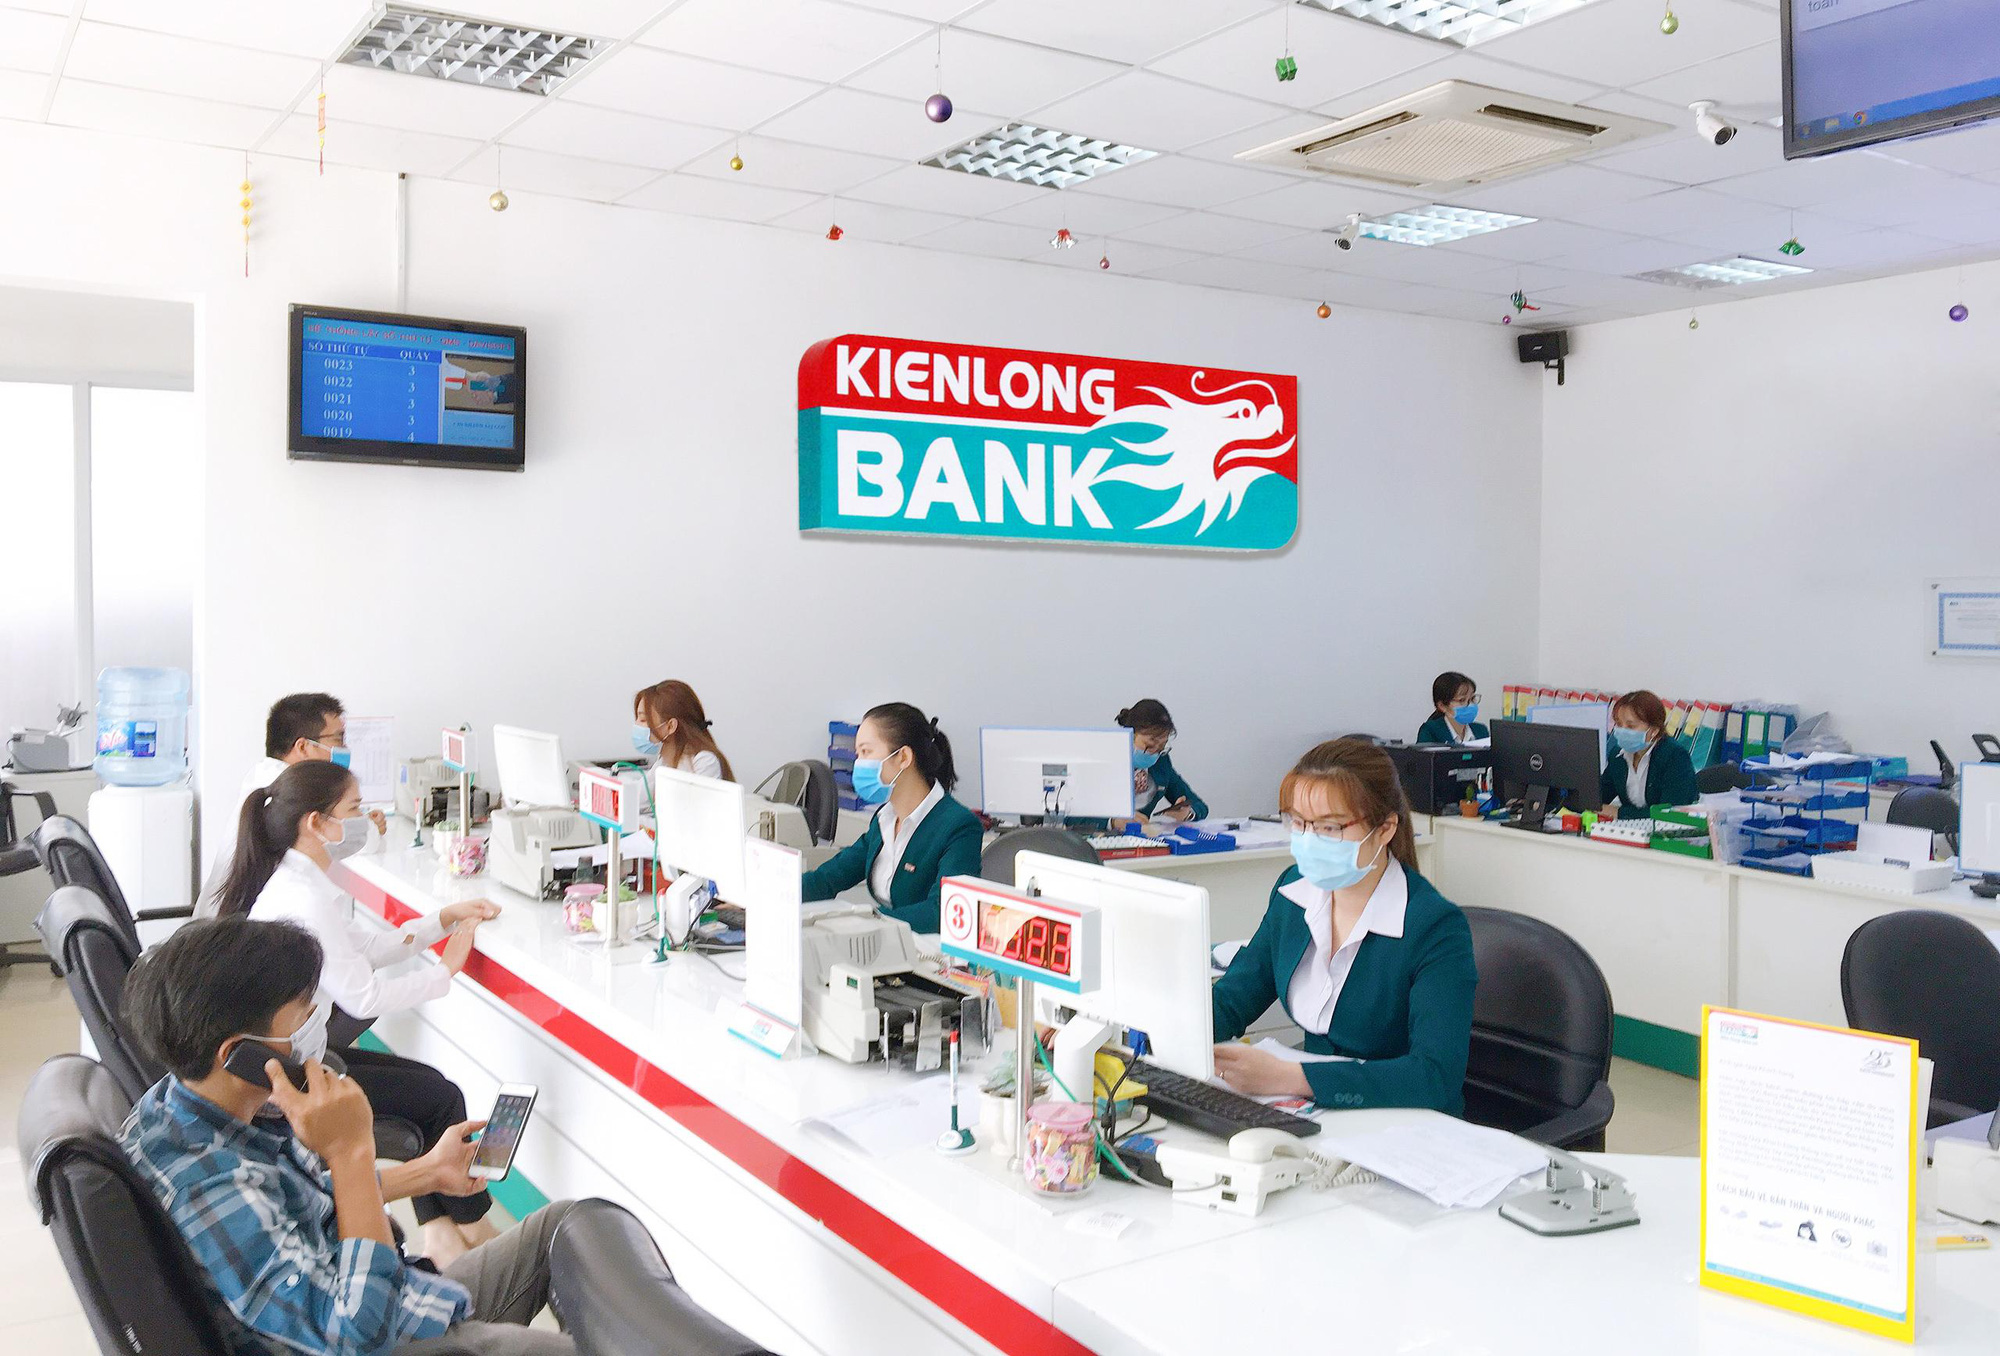 Kienlongbank miễn phí chuyển tiền trong và ngoài hệ thống dành cho mọi khách hàng - Ảnh 2.